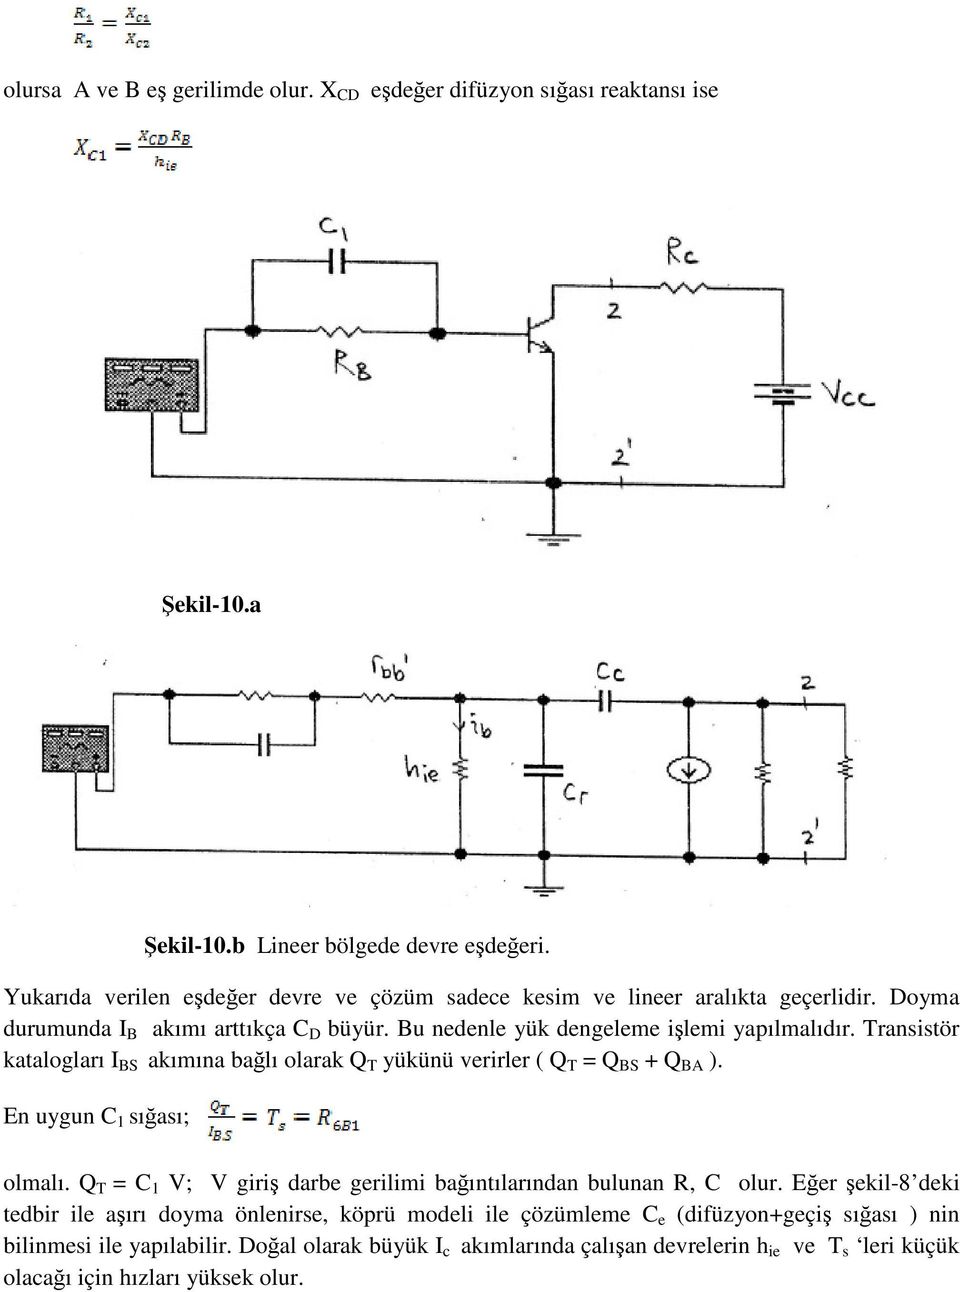 Transistör katalogları I BS akımına bağlı olarak Q T yükünü verirler ( Q T = Q BS + Q BA ). En uygun C 1 sığası; olmalı.